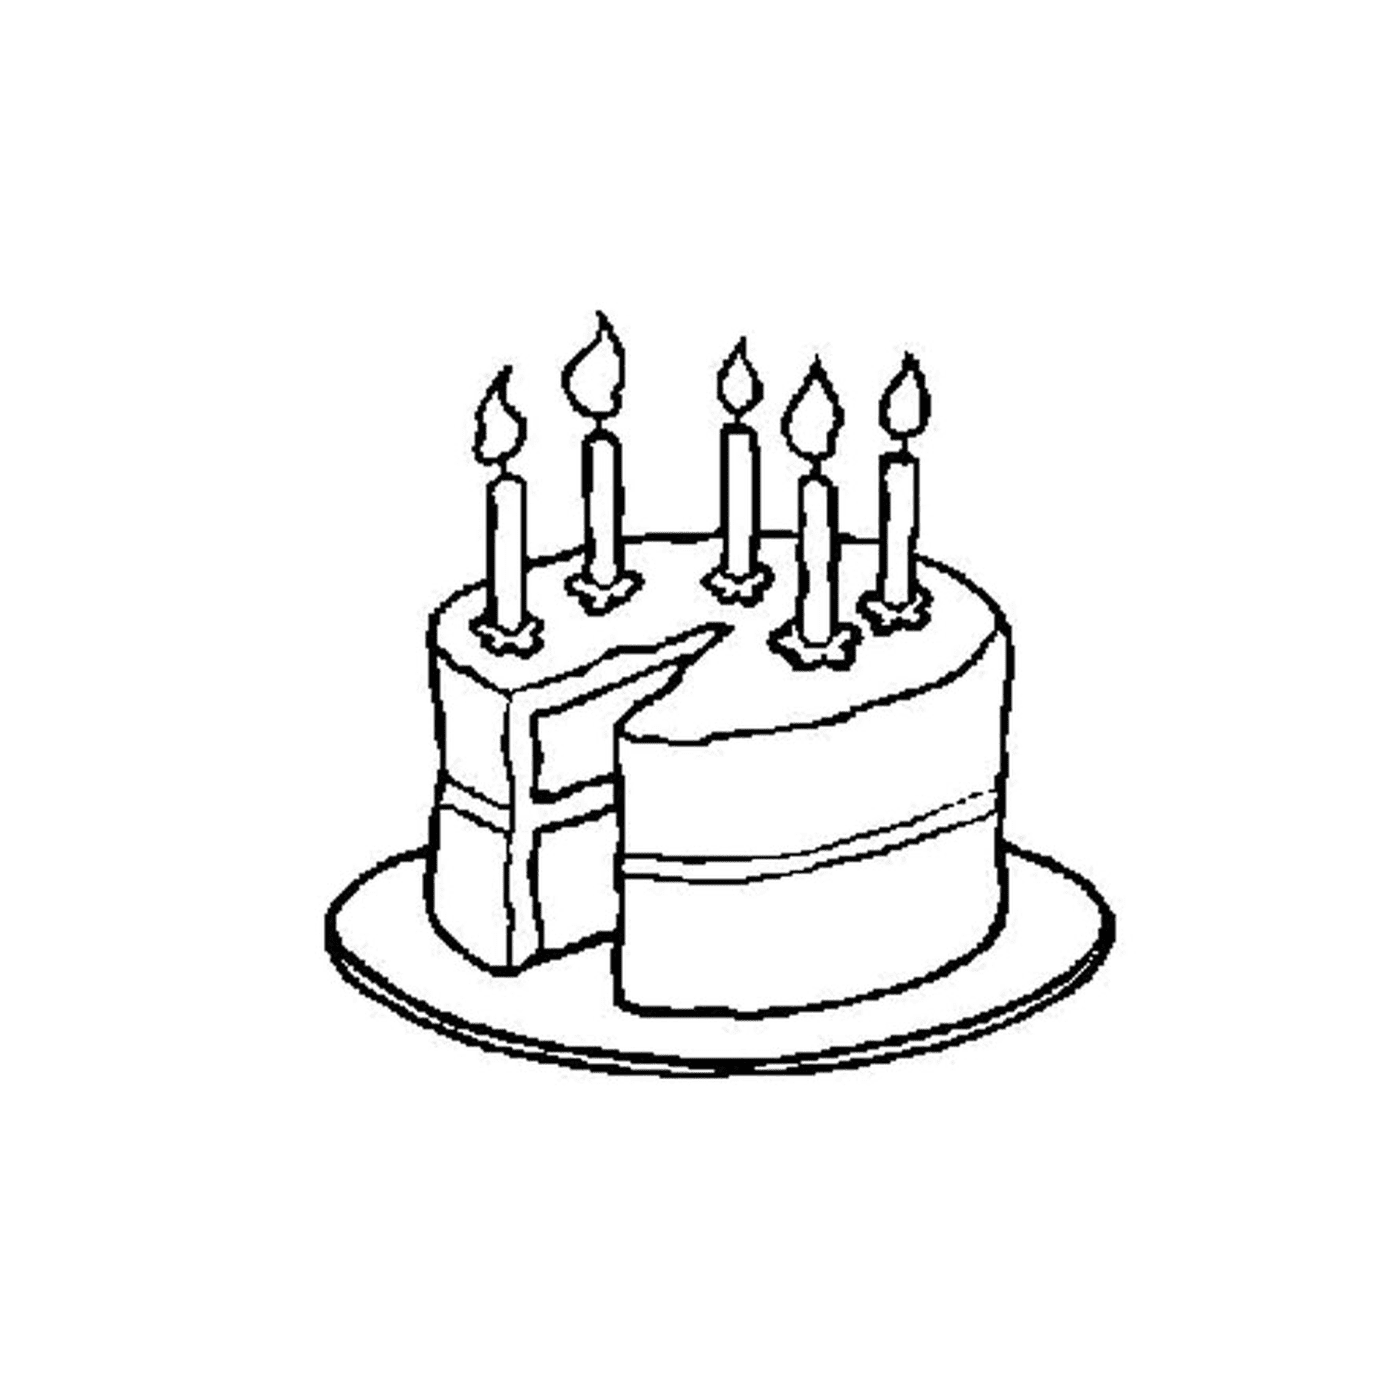  Happy birthday cake 